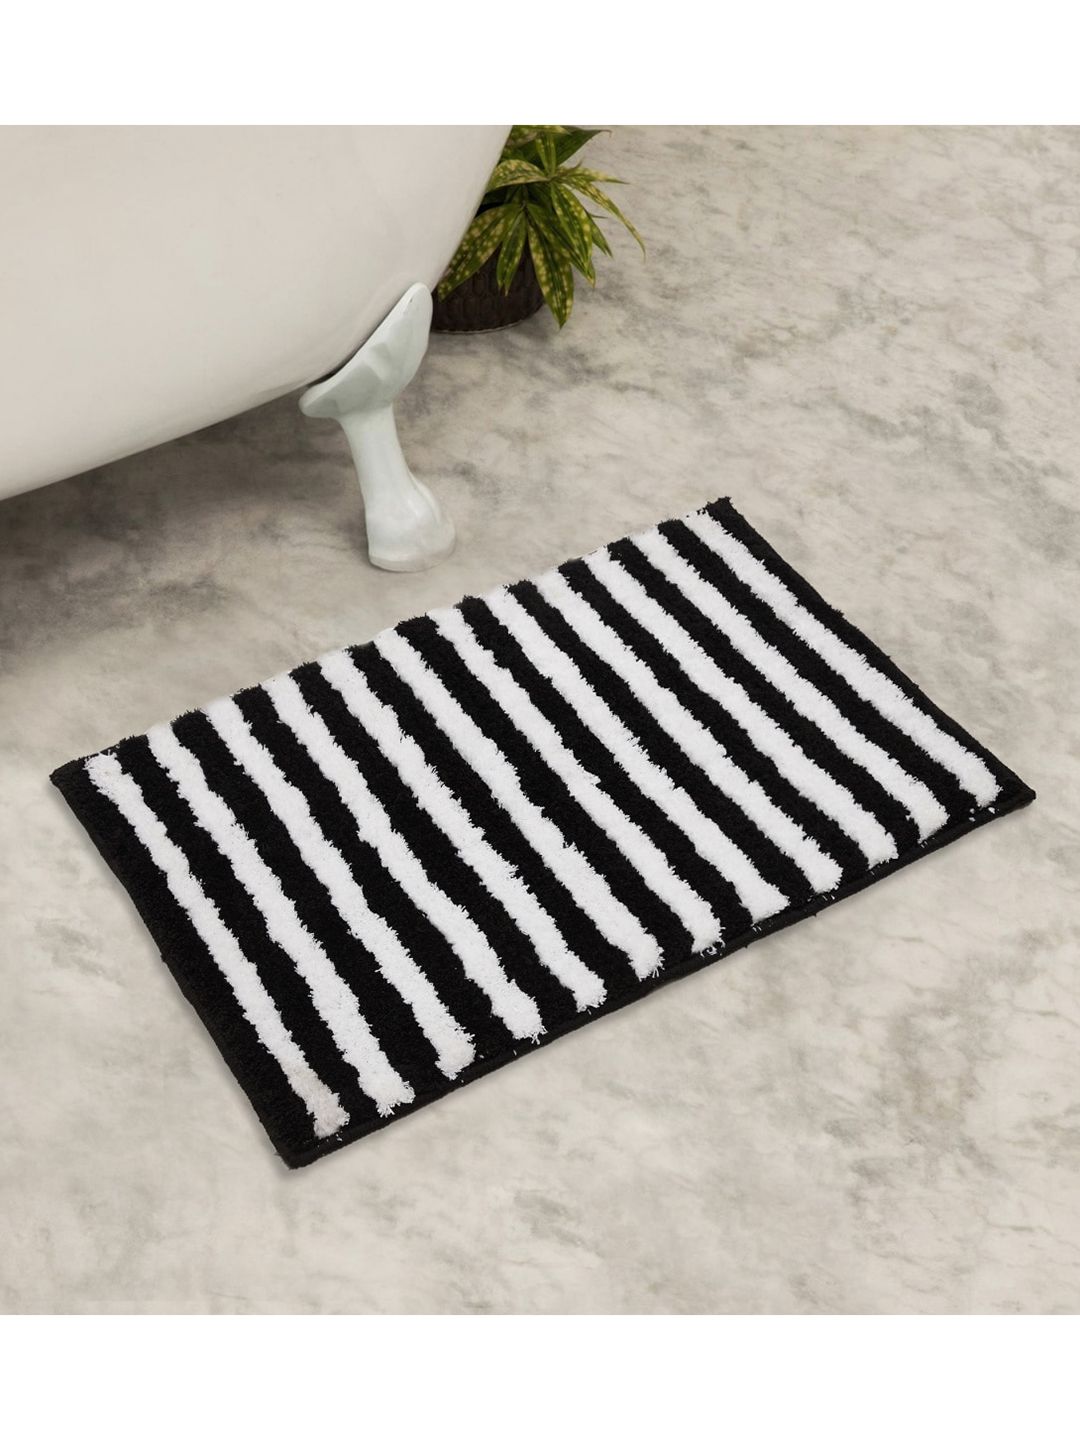 Home Centre Black & White Striped Anti-Slip Bath Mats Price in India